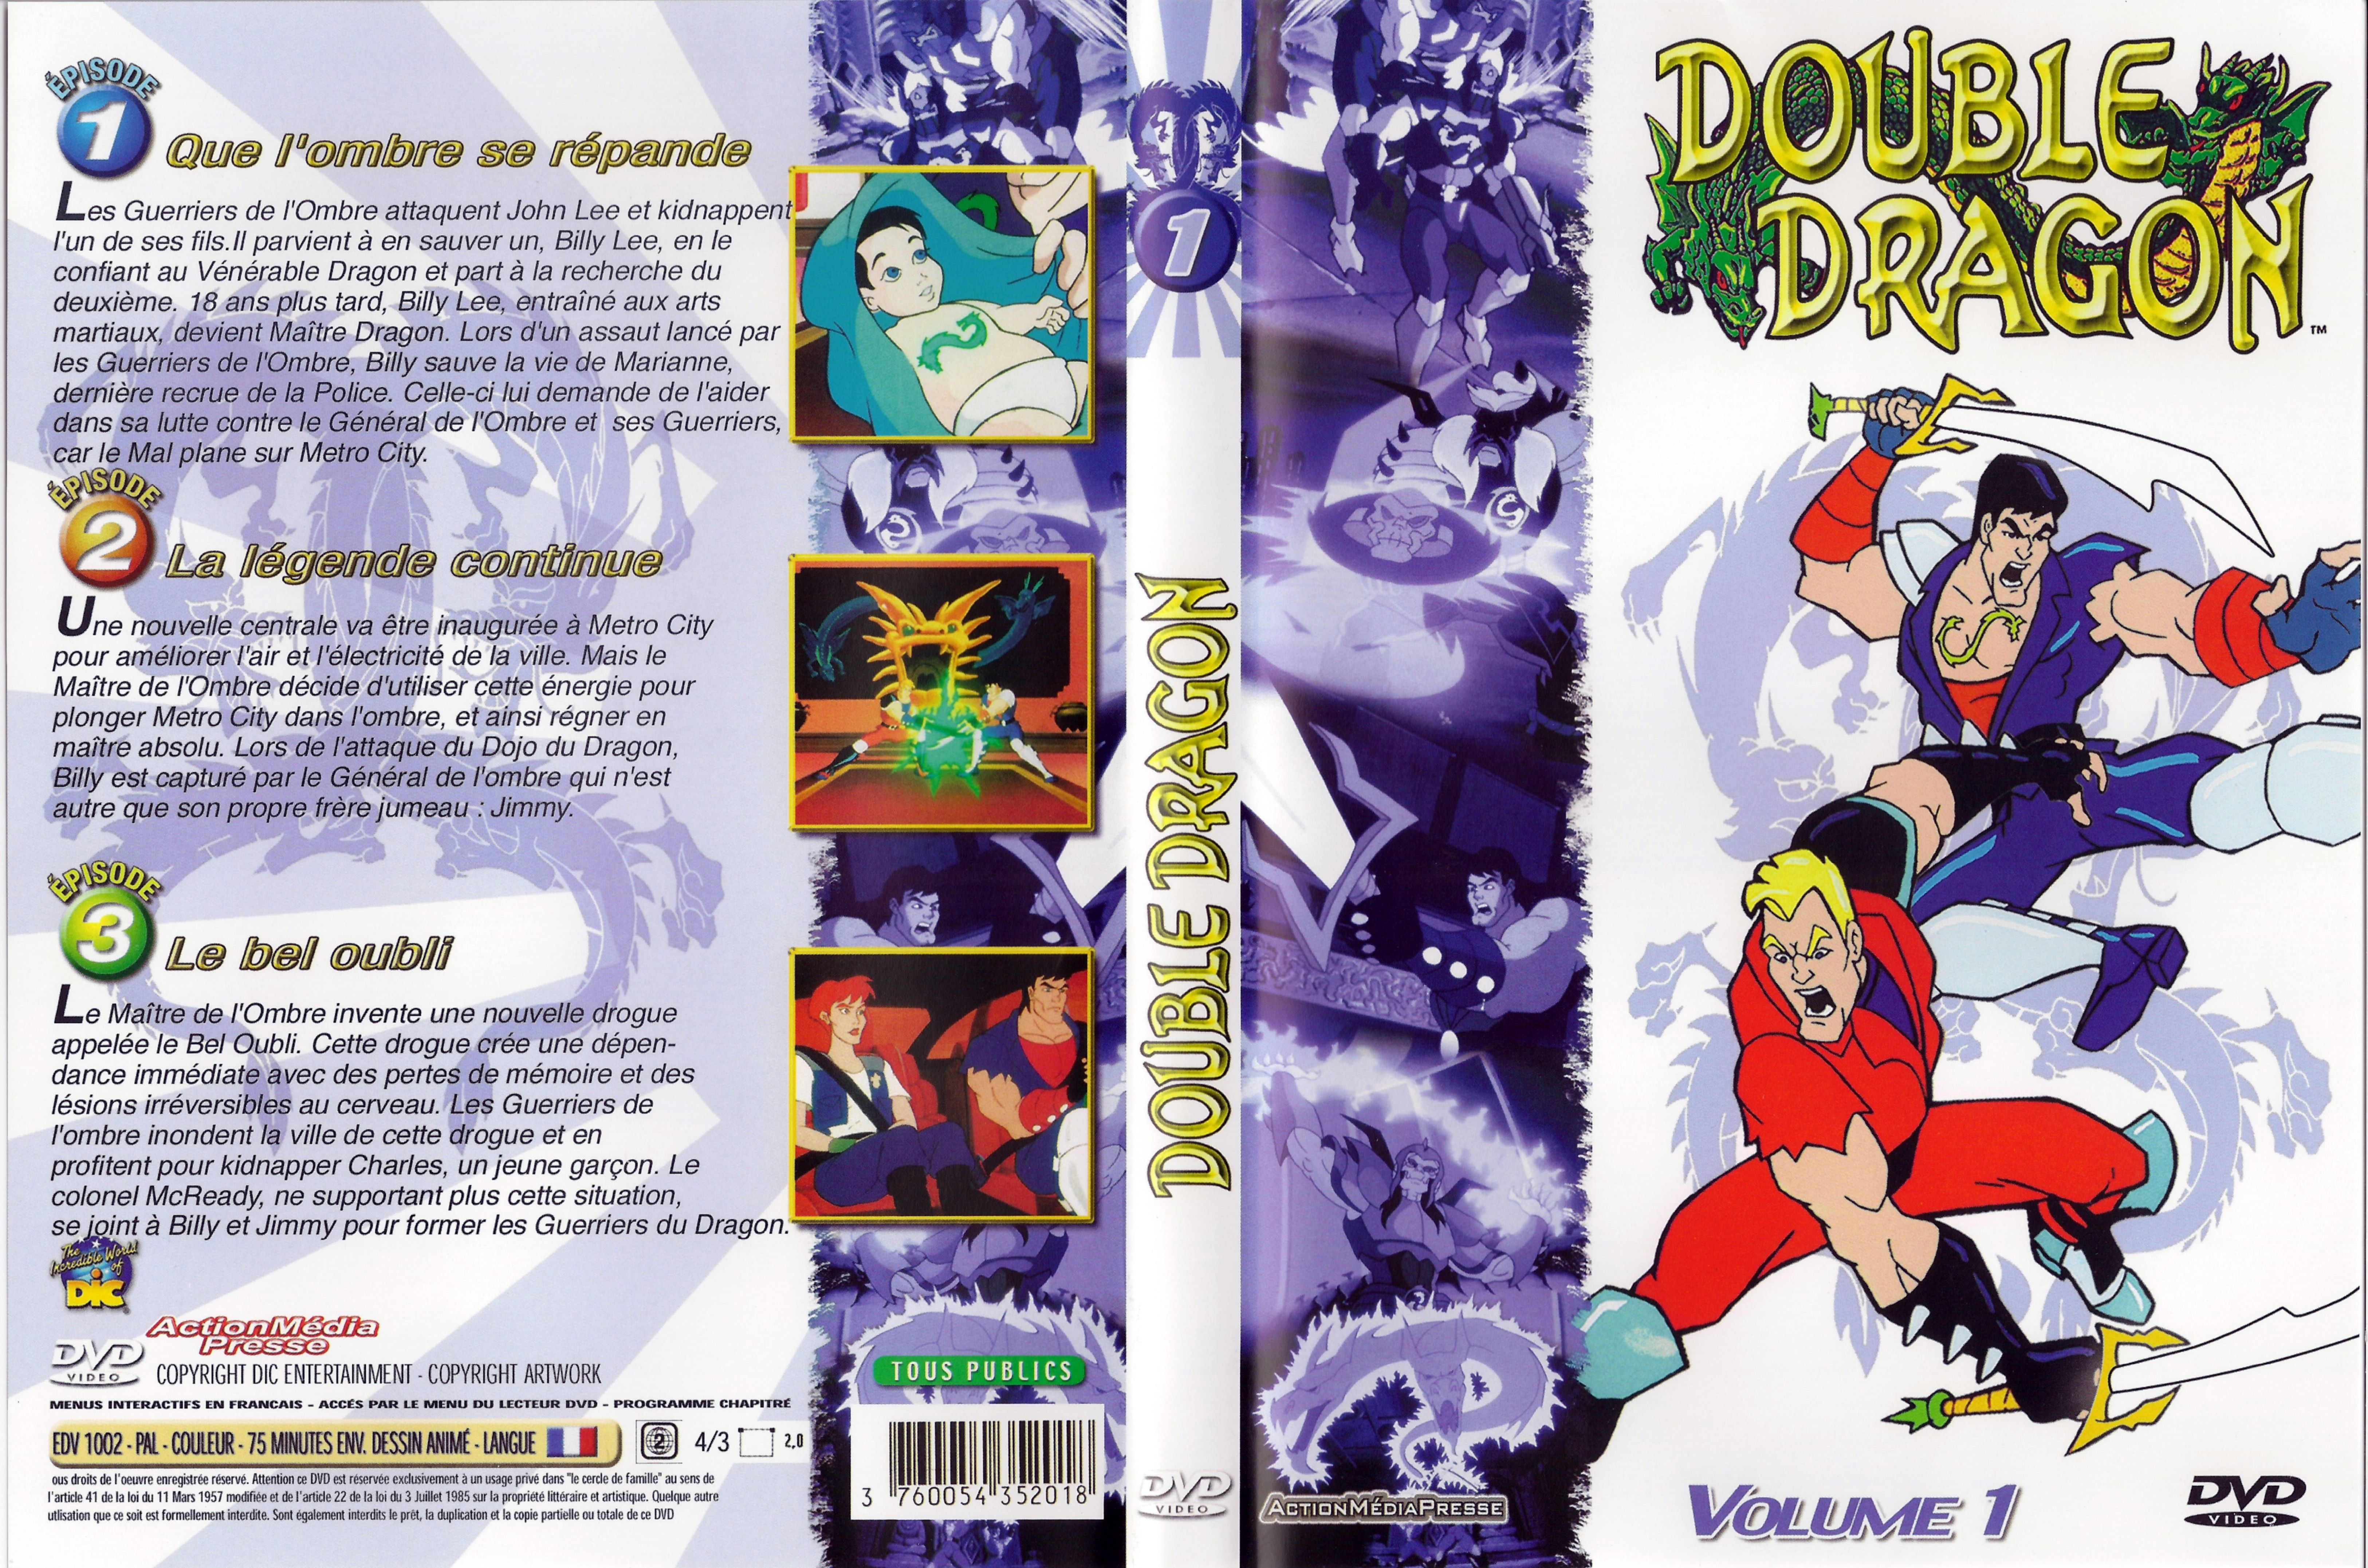 Jaquette DVD Double dragon vol 1